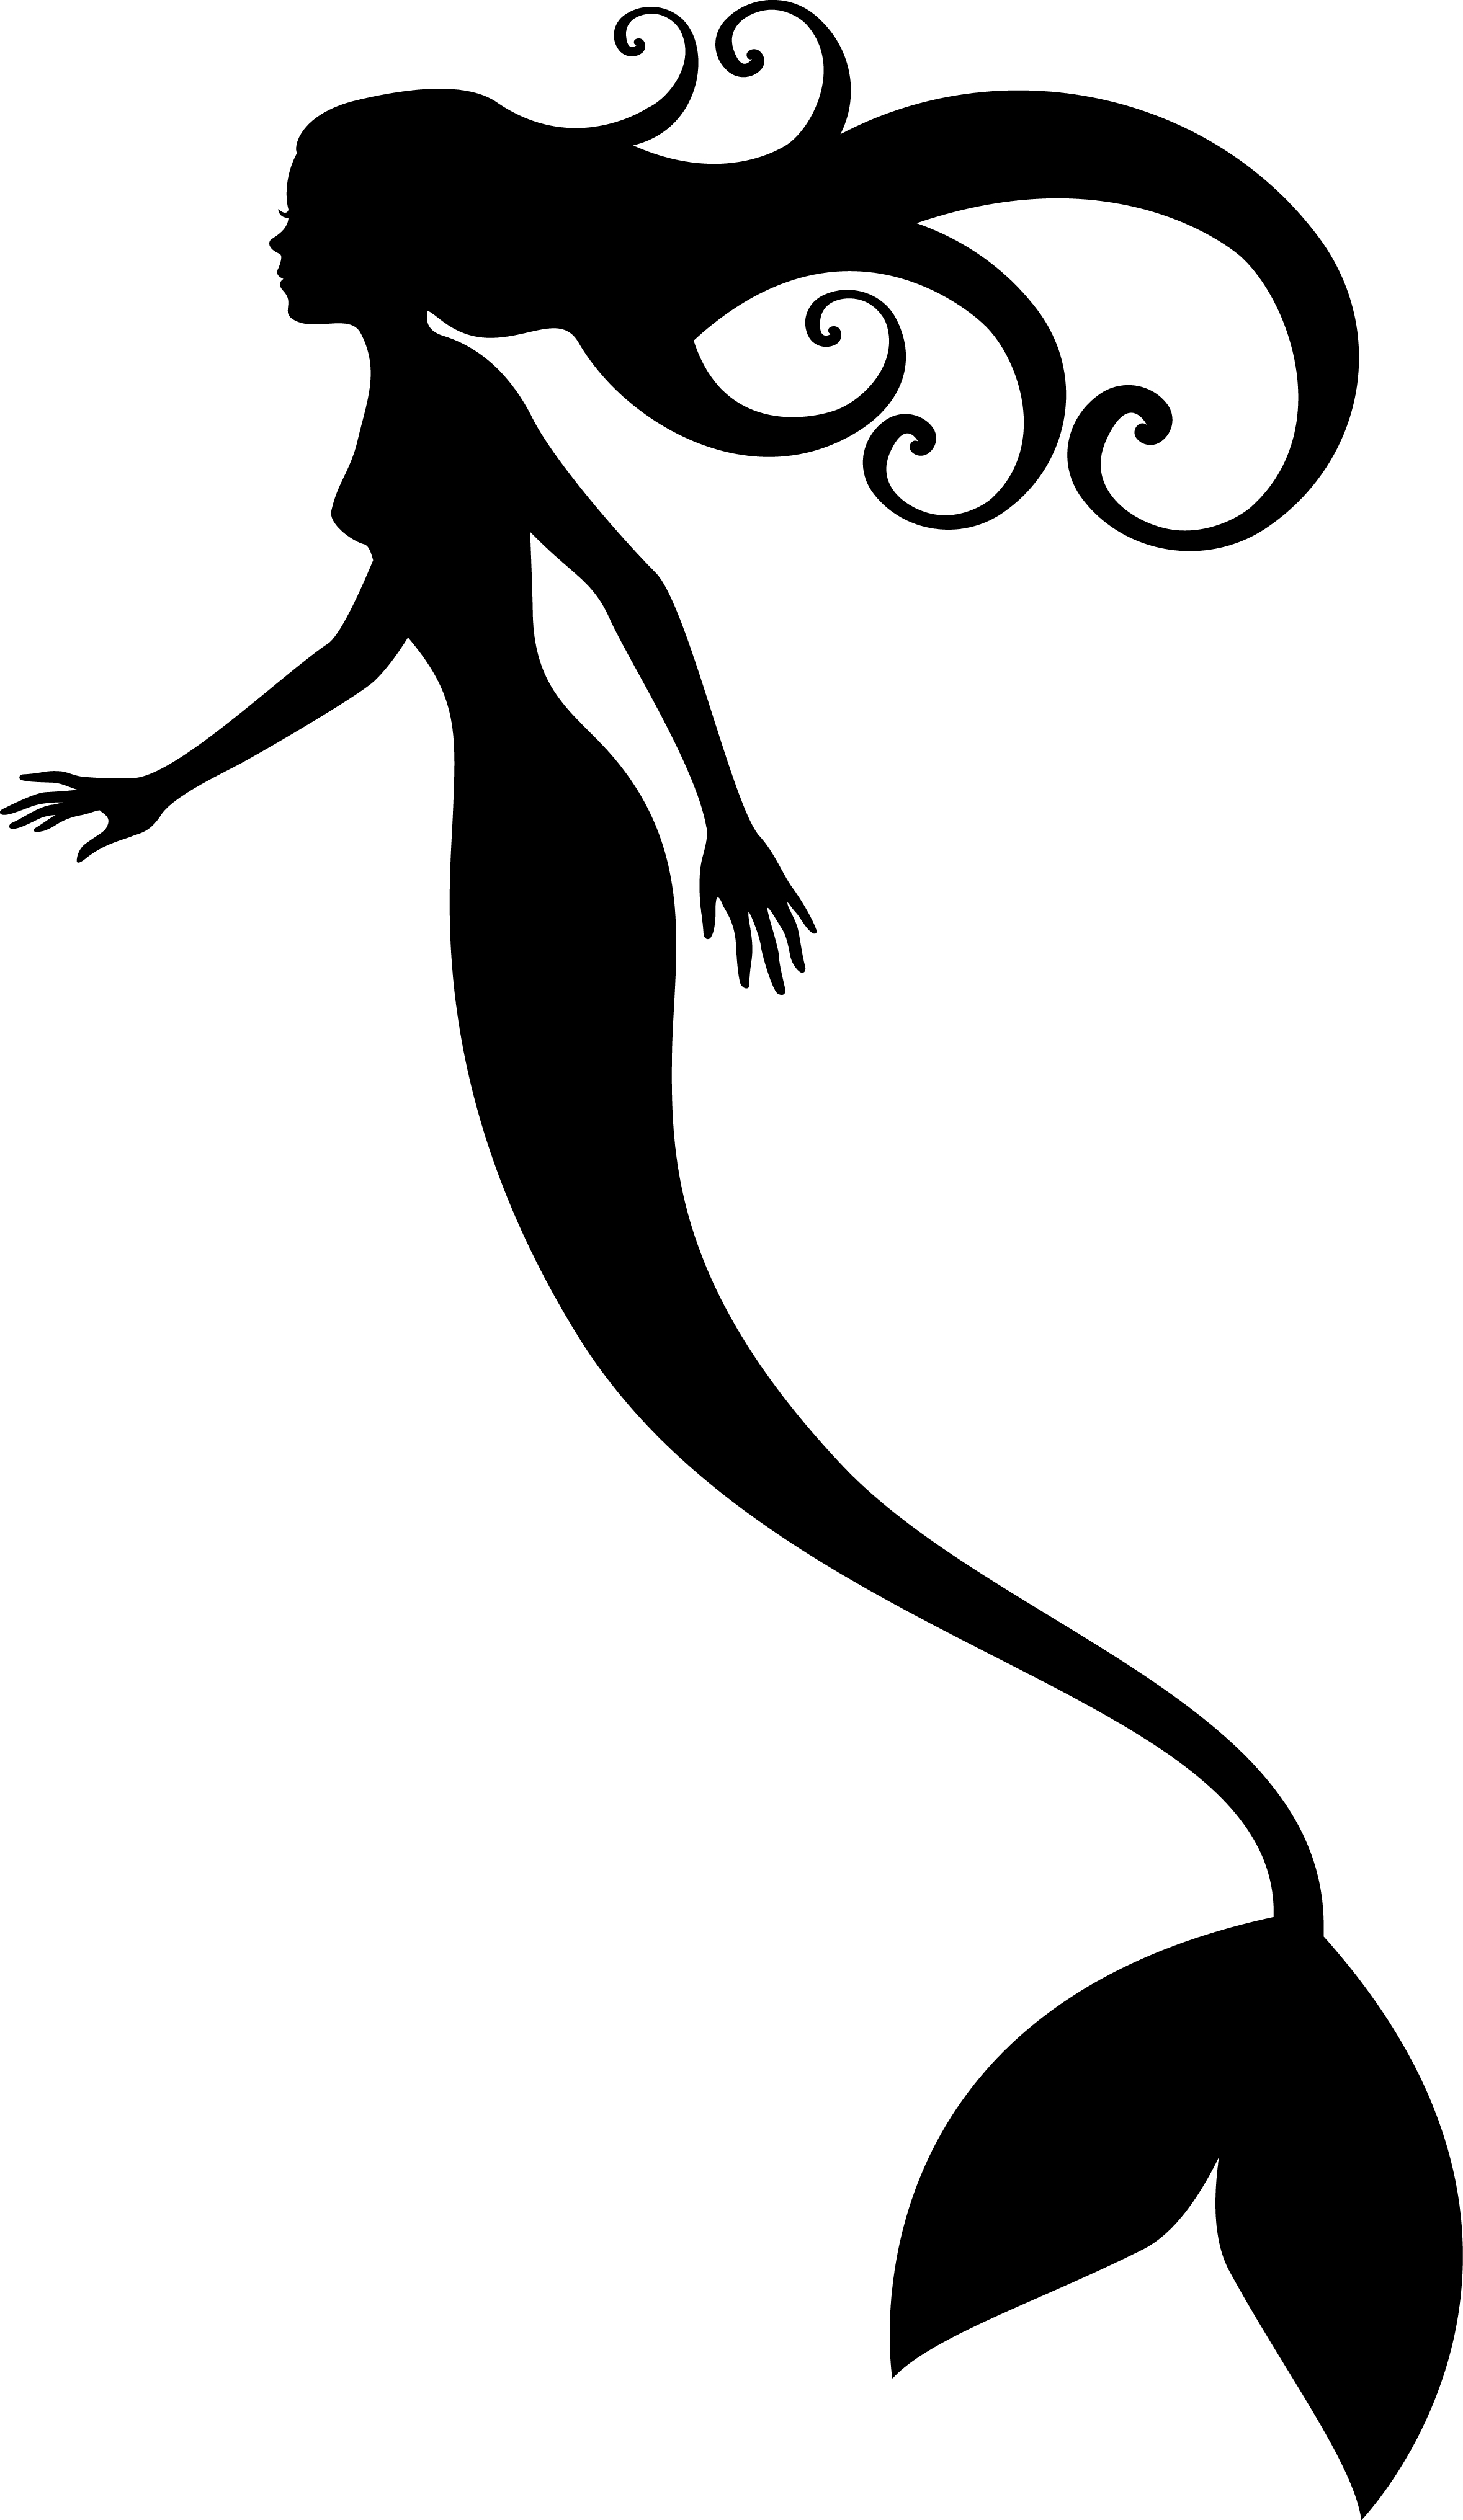 Free Printable Mermaid Silhouette, Download Free Printable Mermaid